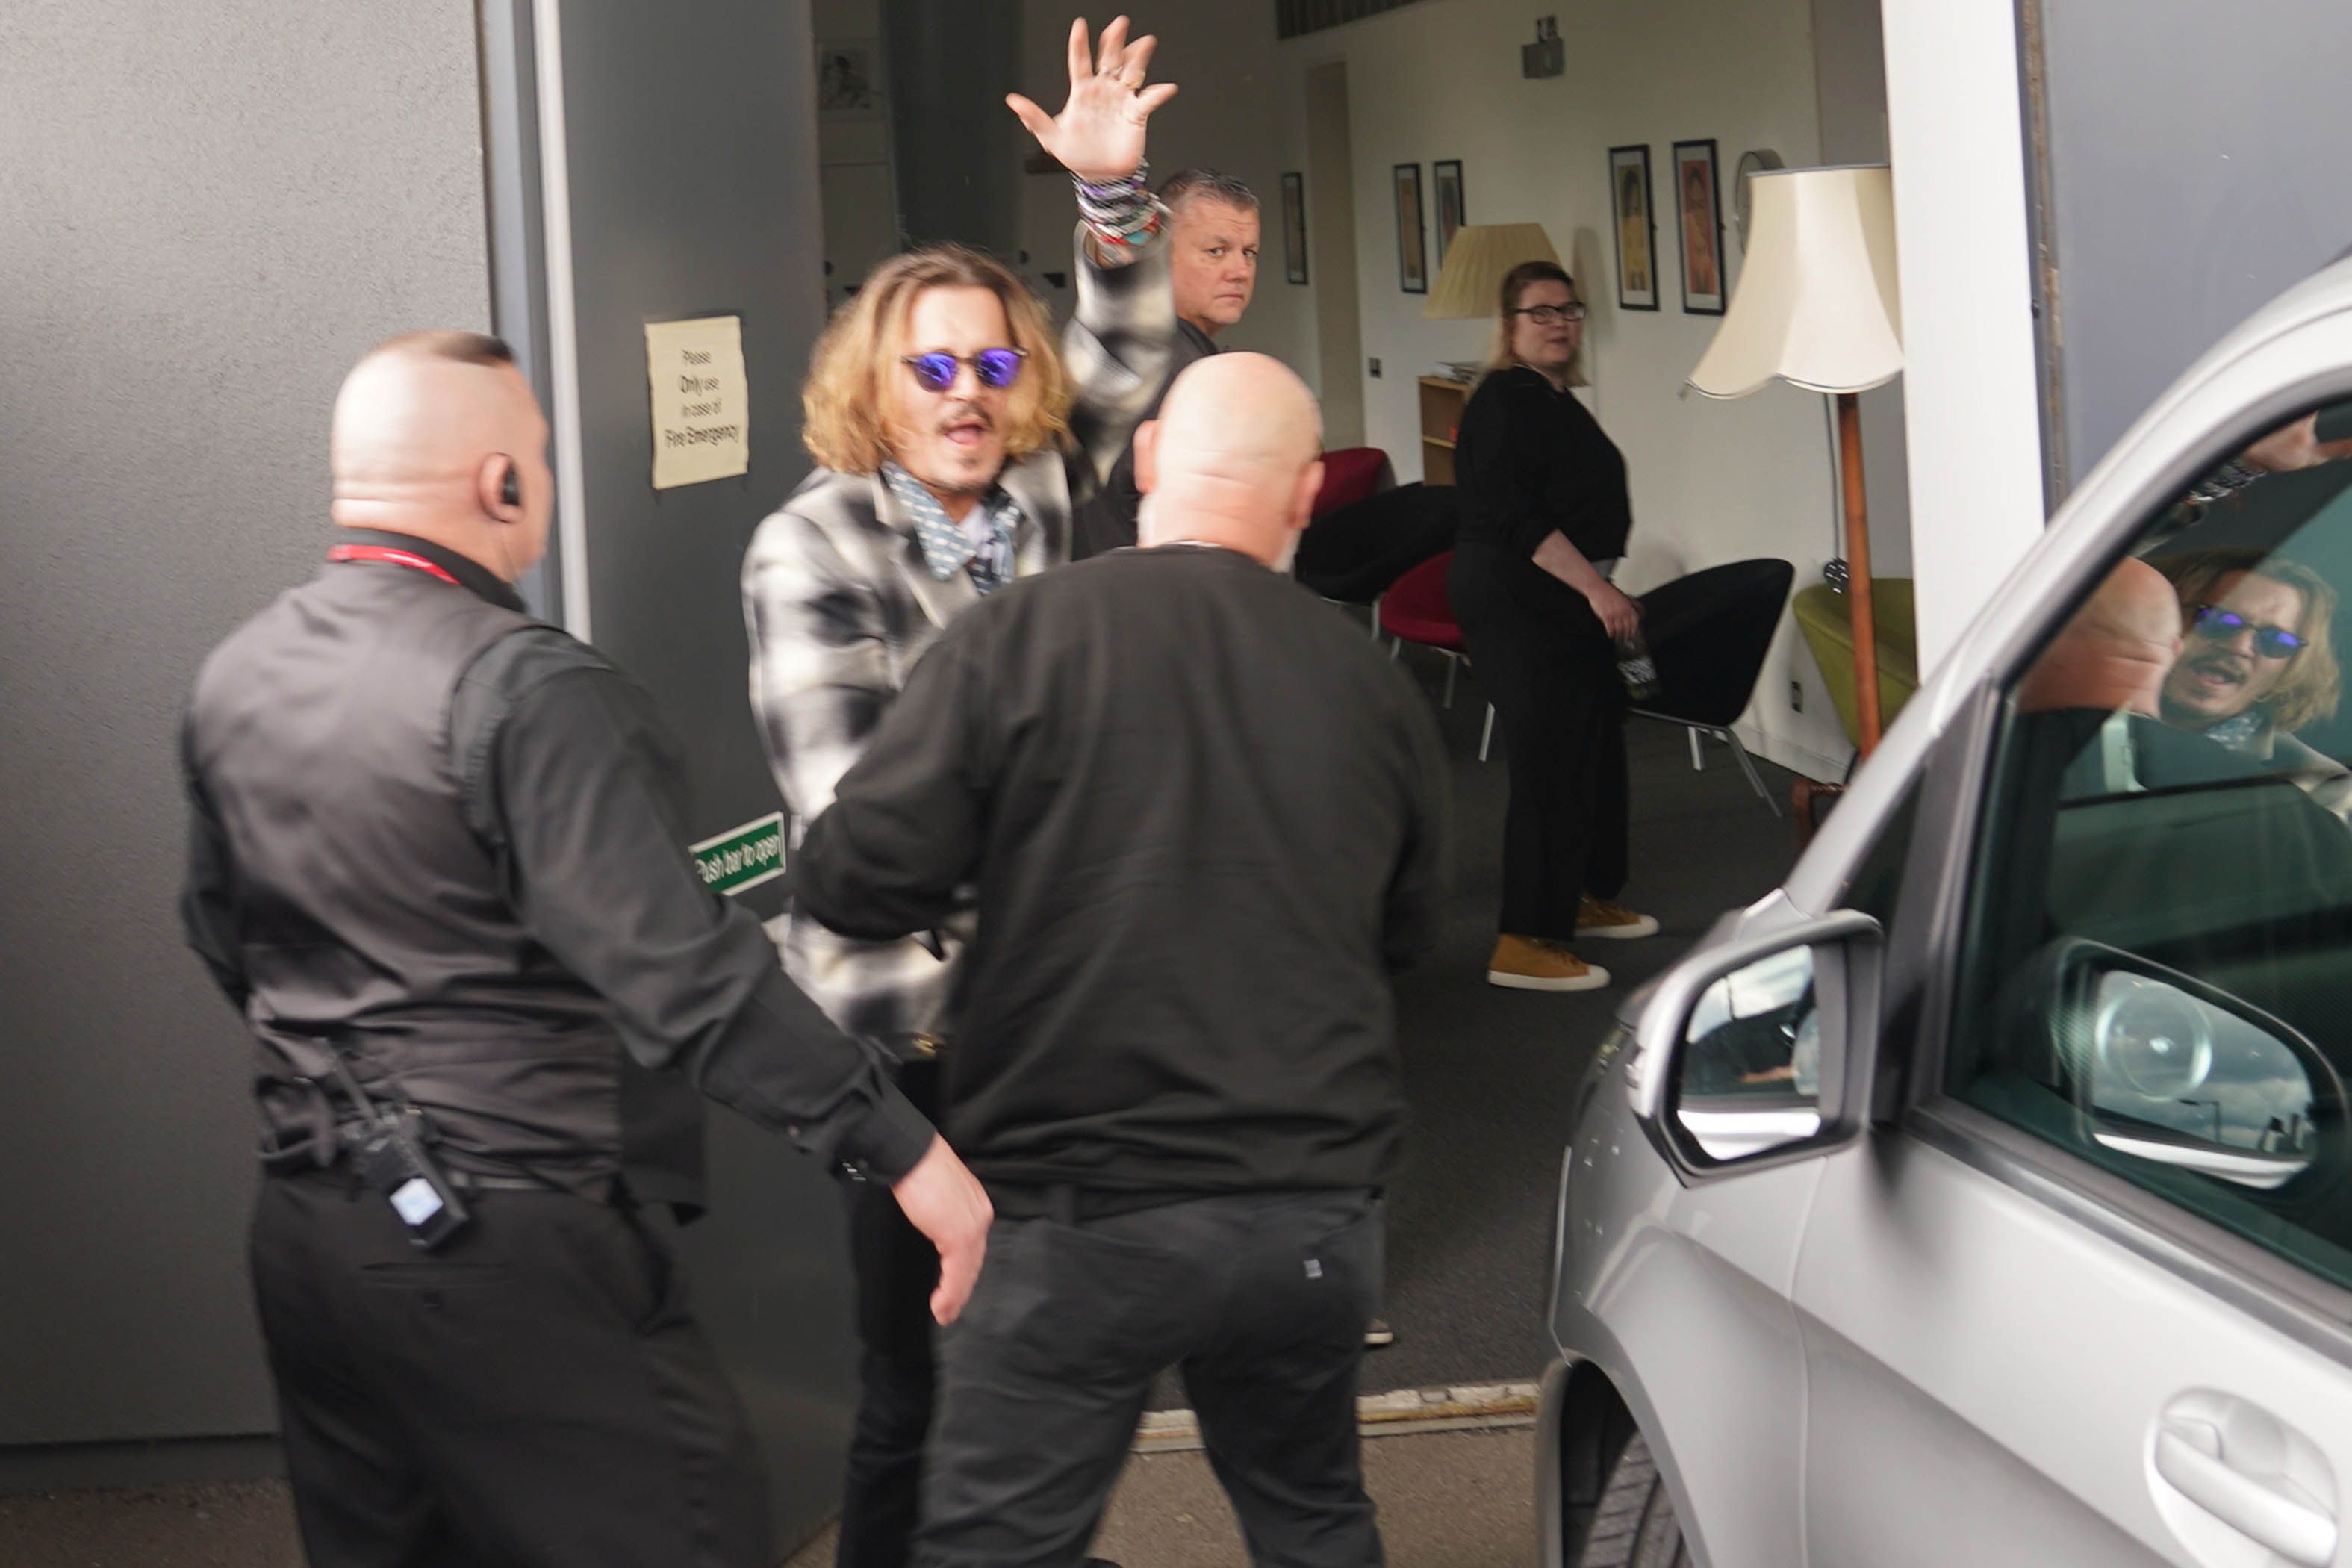 Um gerente de locação de filme revelou que Johnny Depp ofereceu a ele US $ 100.000 para socá-lo na cara